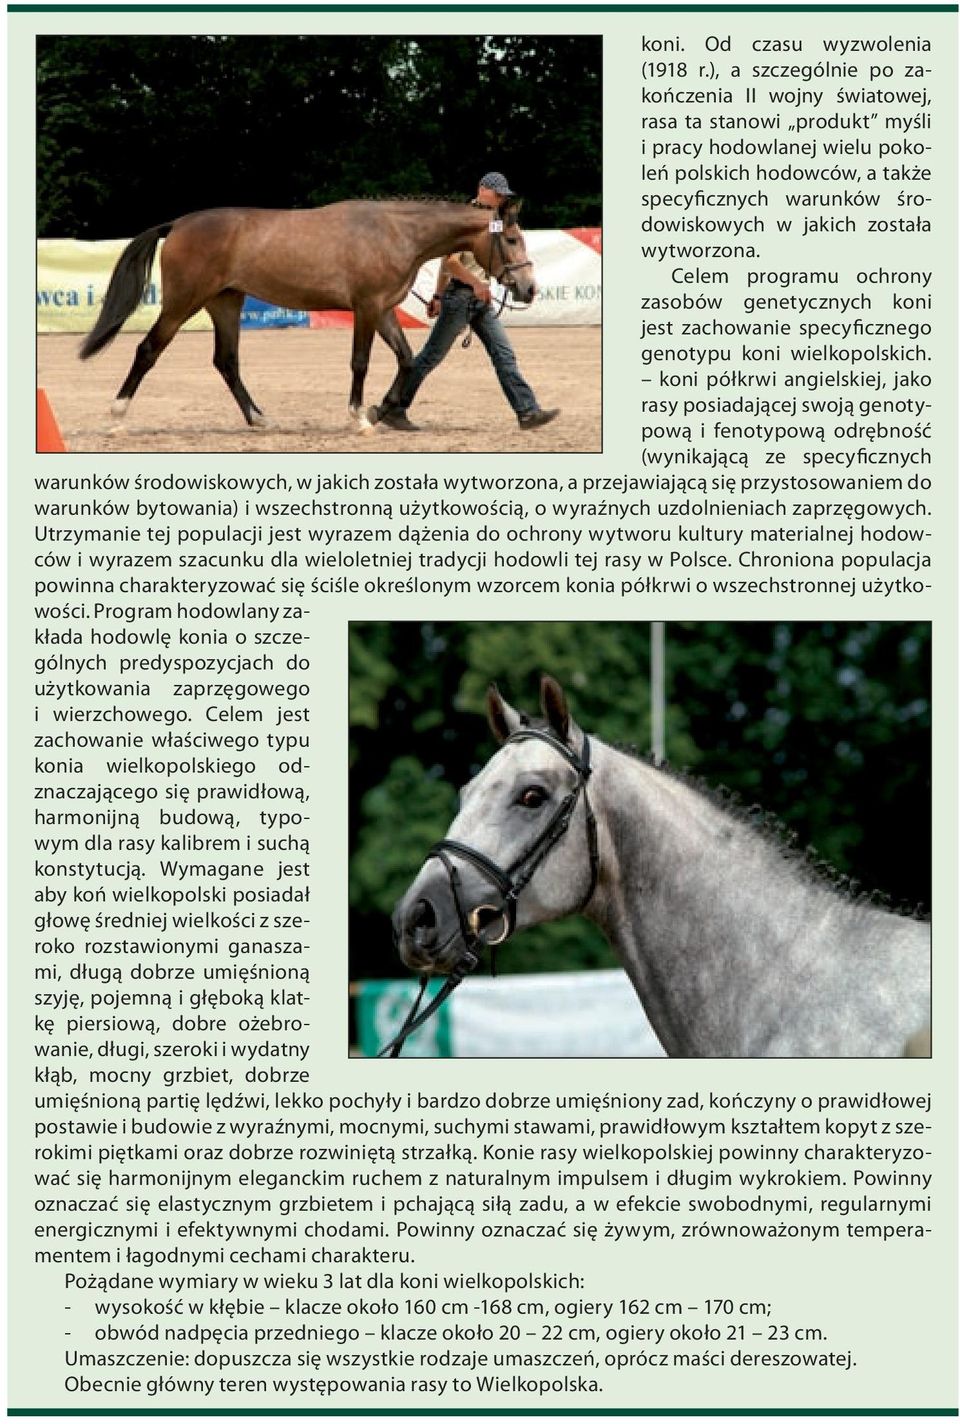 wytworzona. Celem programu ochrony zasobów genetycznych koni jest zachowanie specyficznego genotypu koni wielkopolskich.